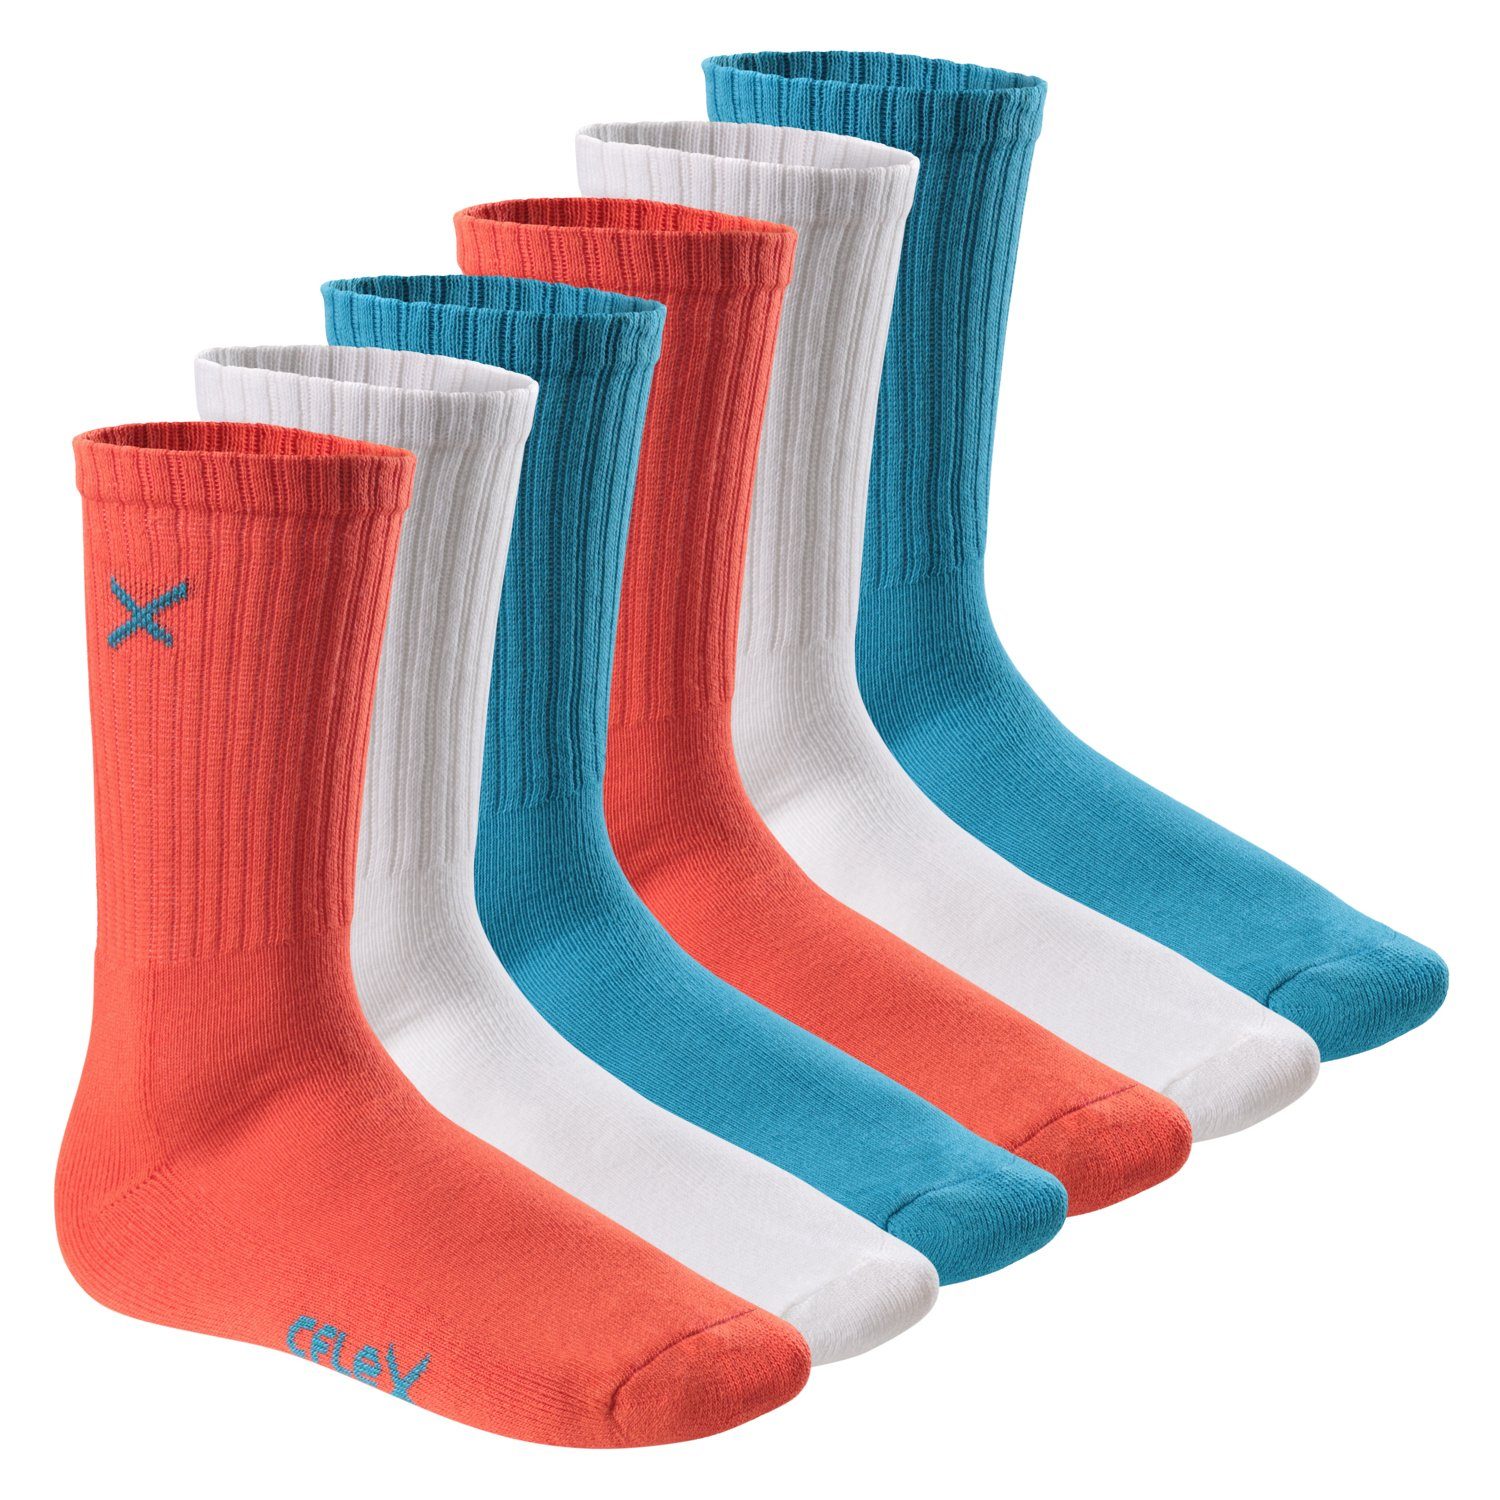 CFLEX Sportsocken Lifestyle Crew Socks (6 Paar) für Damen & Herren mit Frotteesohle Blue Coral Mix